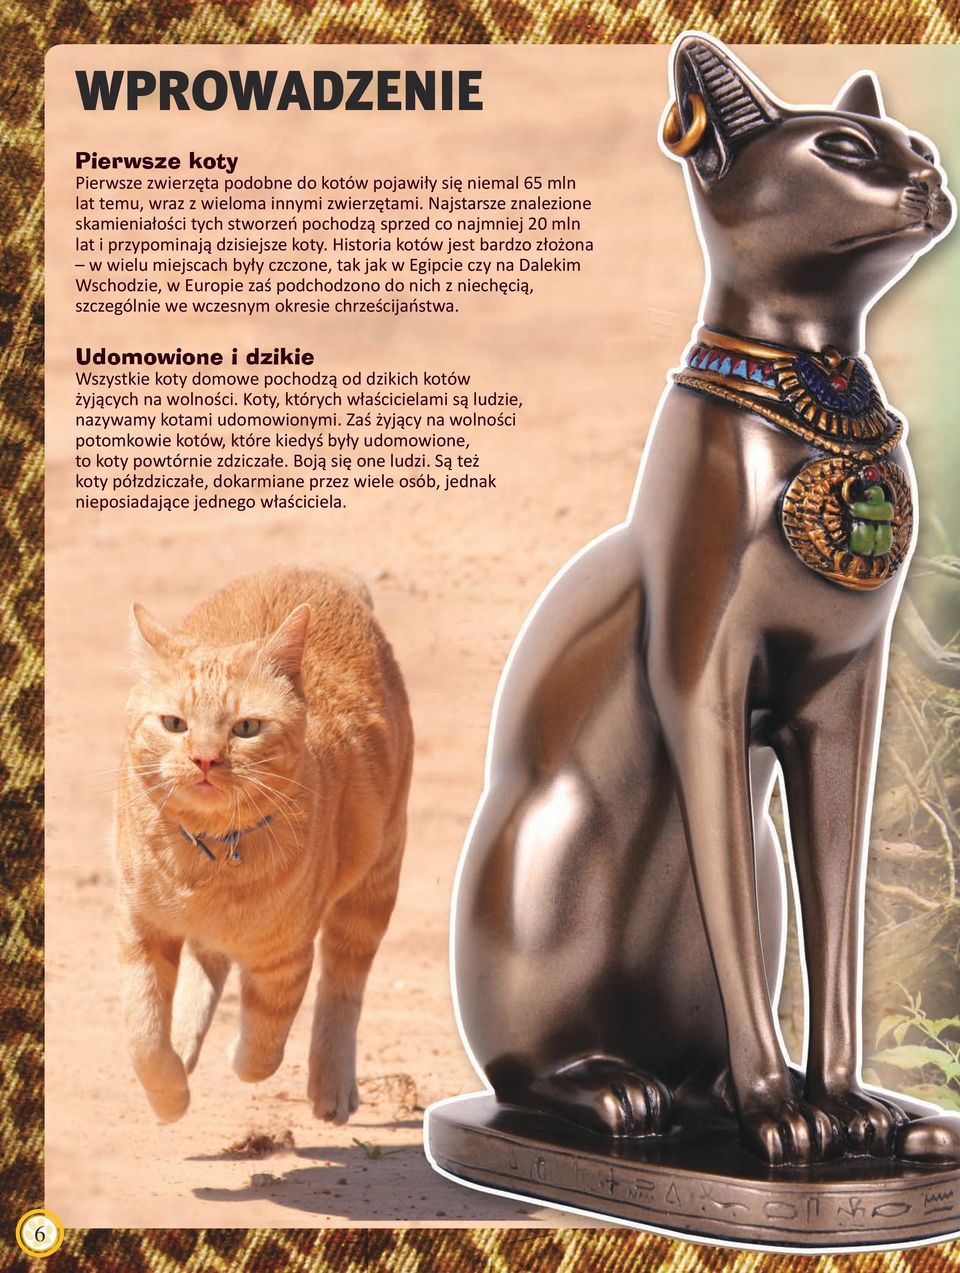 Historia kotów jest bardzo złożona w wielu miejscach były czczone, tak jak w Egipcie czy na Dalekim Wschodzie, w Europie zaś podchodzono do nich z niechęcią, szczególnie we wczesnym okresie